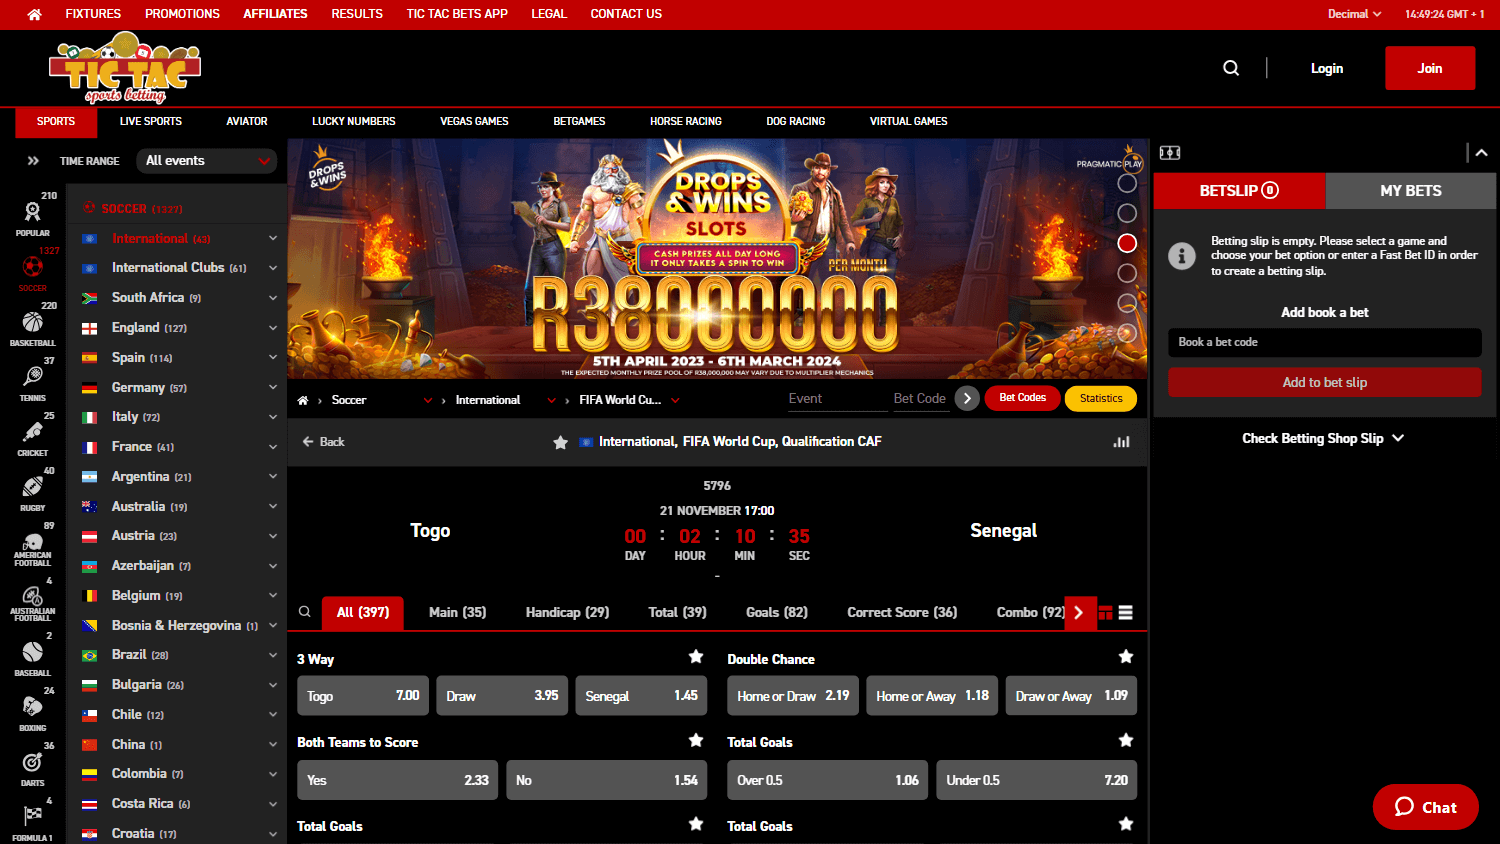 tictacbets_casino_homepage_desktop